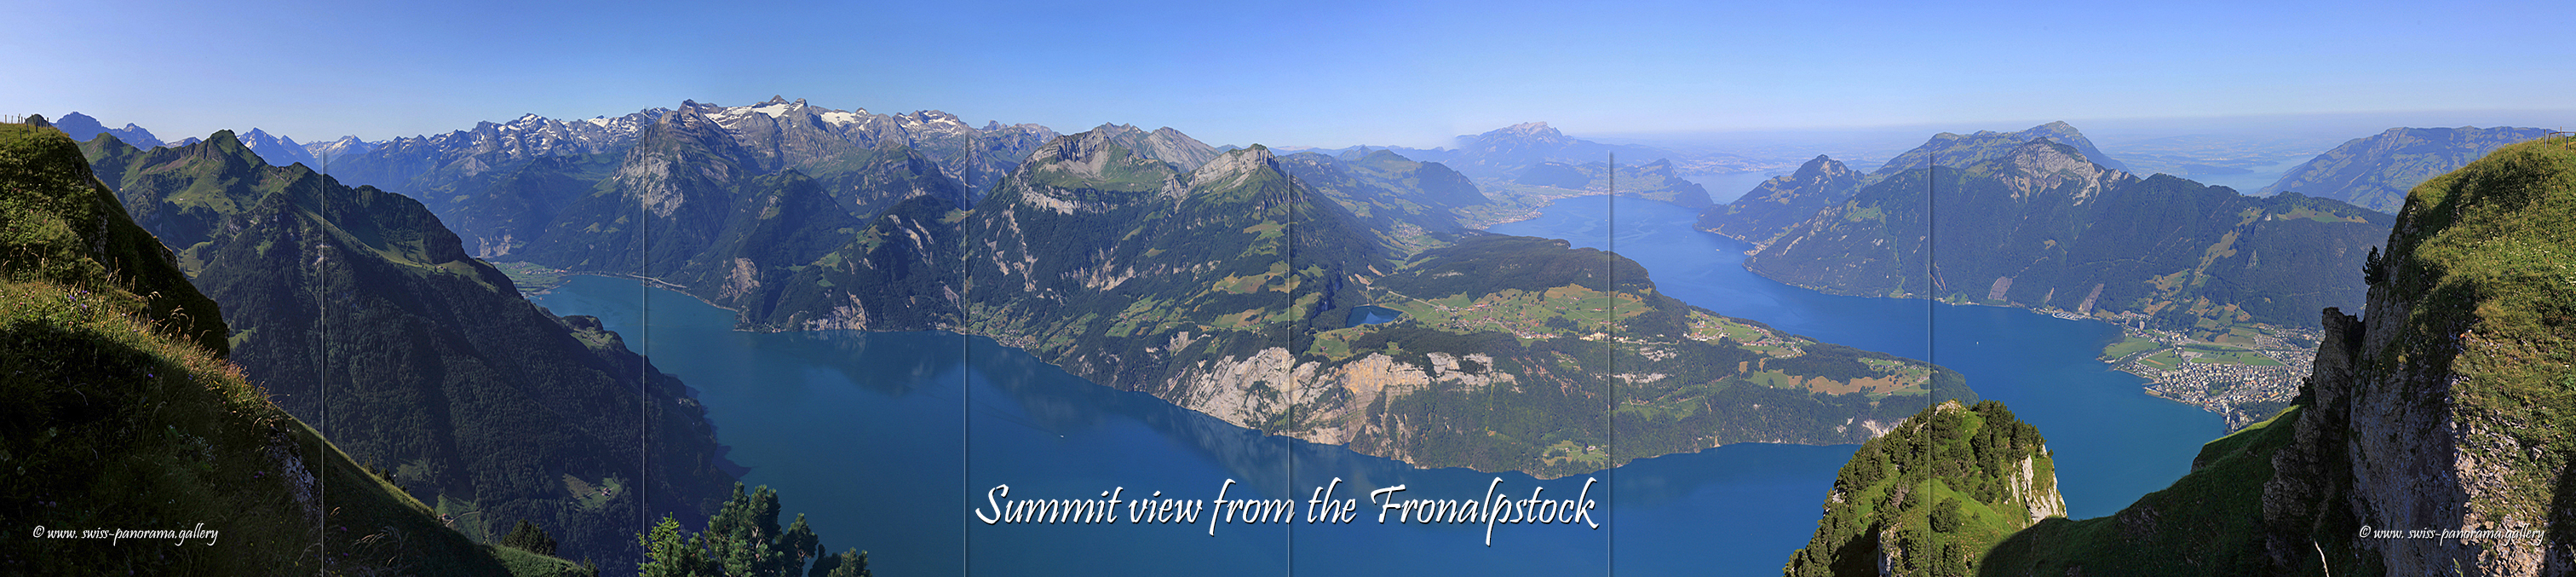 Swiss Panorama Fronalpstock